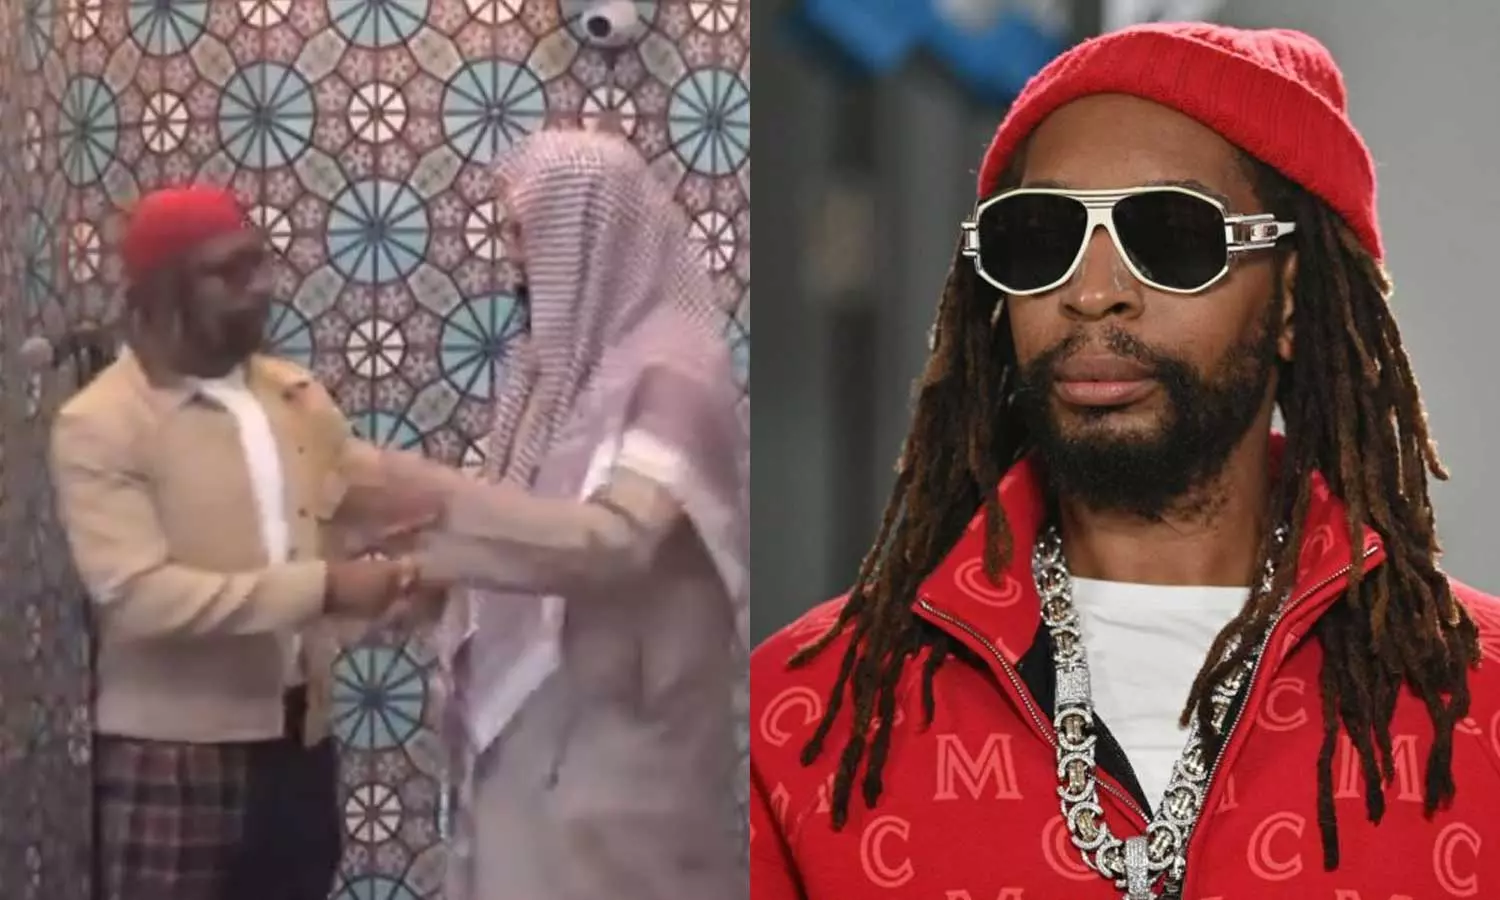 അമേരിക്കയിൽ ഹിപ്‌ഹോപ് സംഗീതം തരംഗമാക്കിയ ലിൽ ജോൺ ഇസ്‌ലാം സ്വീകരിച്ചു, Famed American rapper Lil Jon converts to Islam